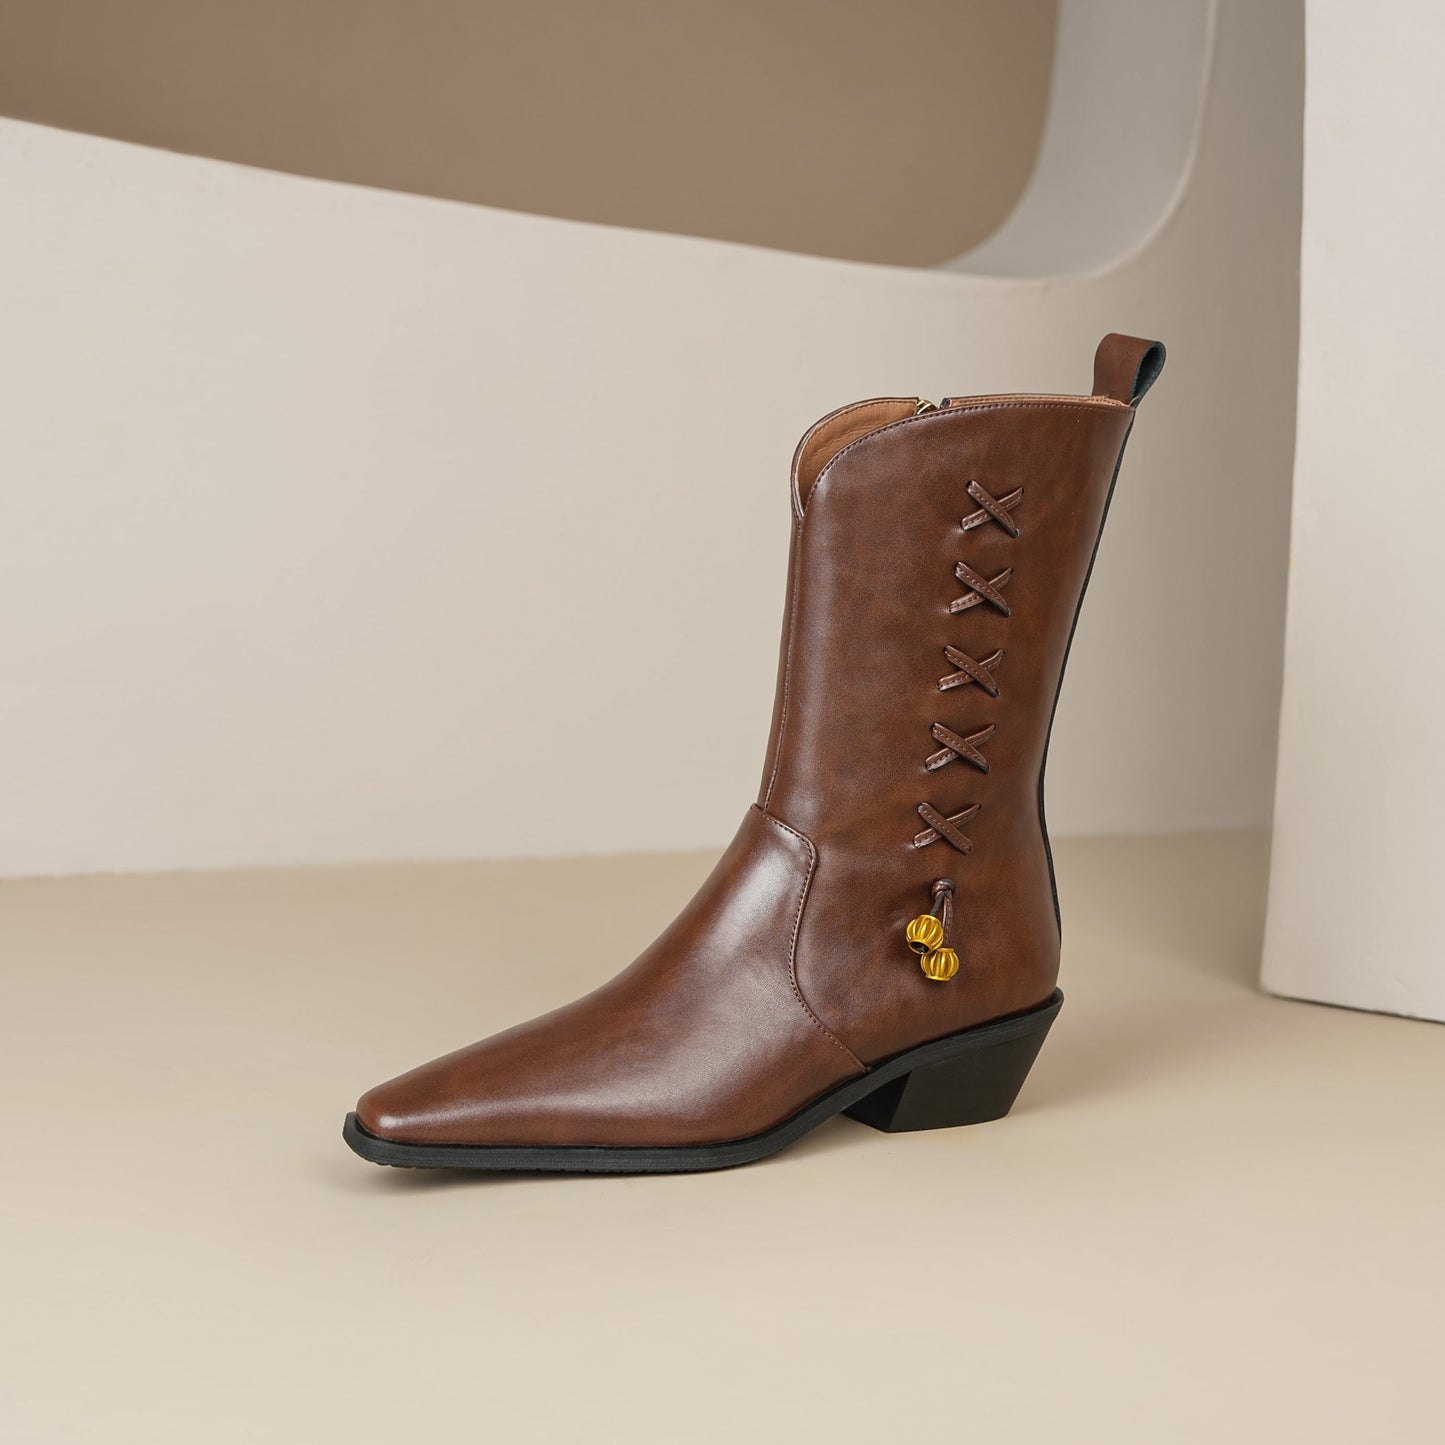 TinaCus Women's Genuine Leather Handmade Block Heel Side Zip Up Mid Calf Boots